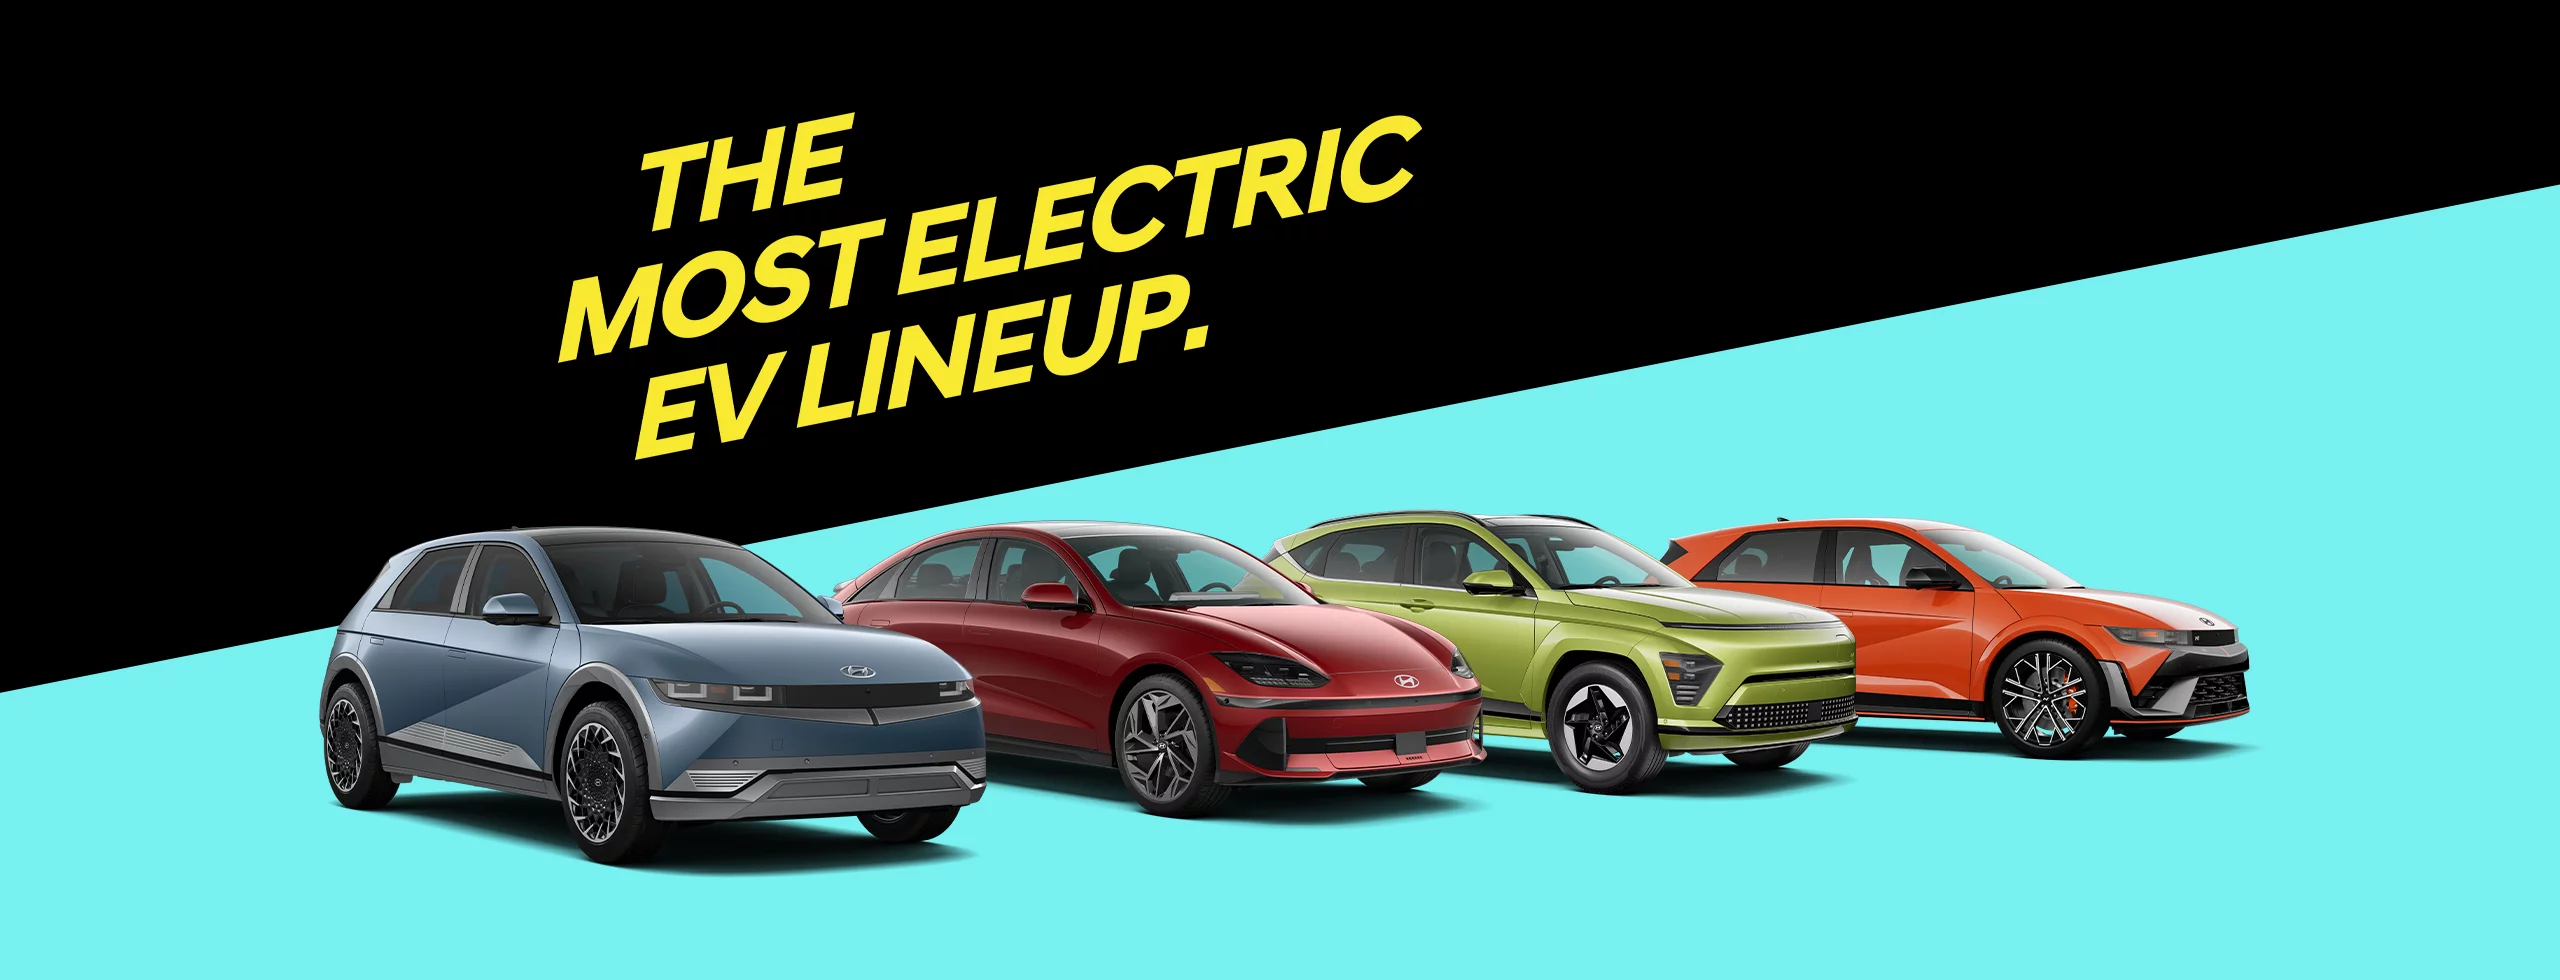 Presentamos la línea de vehículos eléctricos.